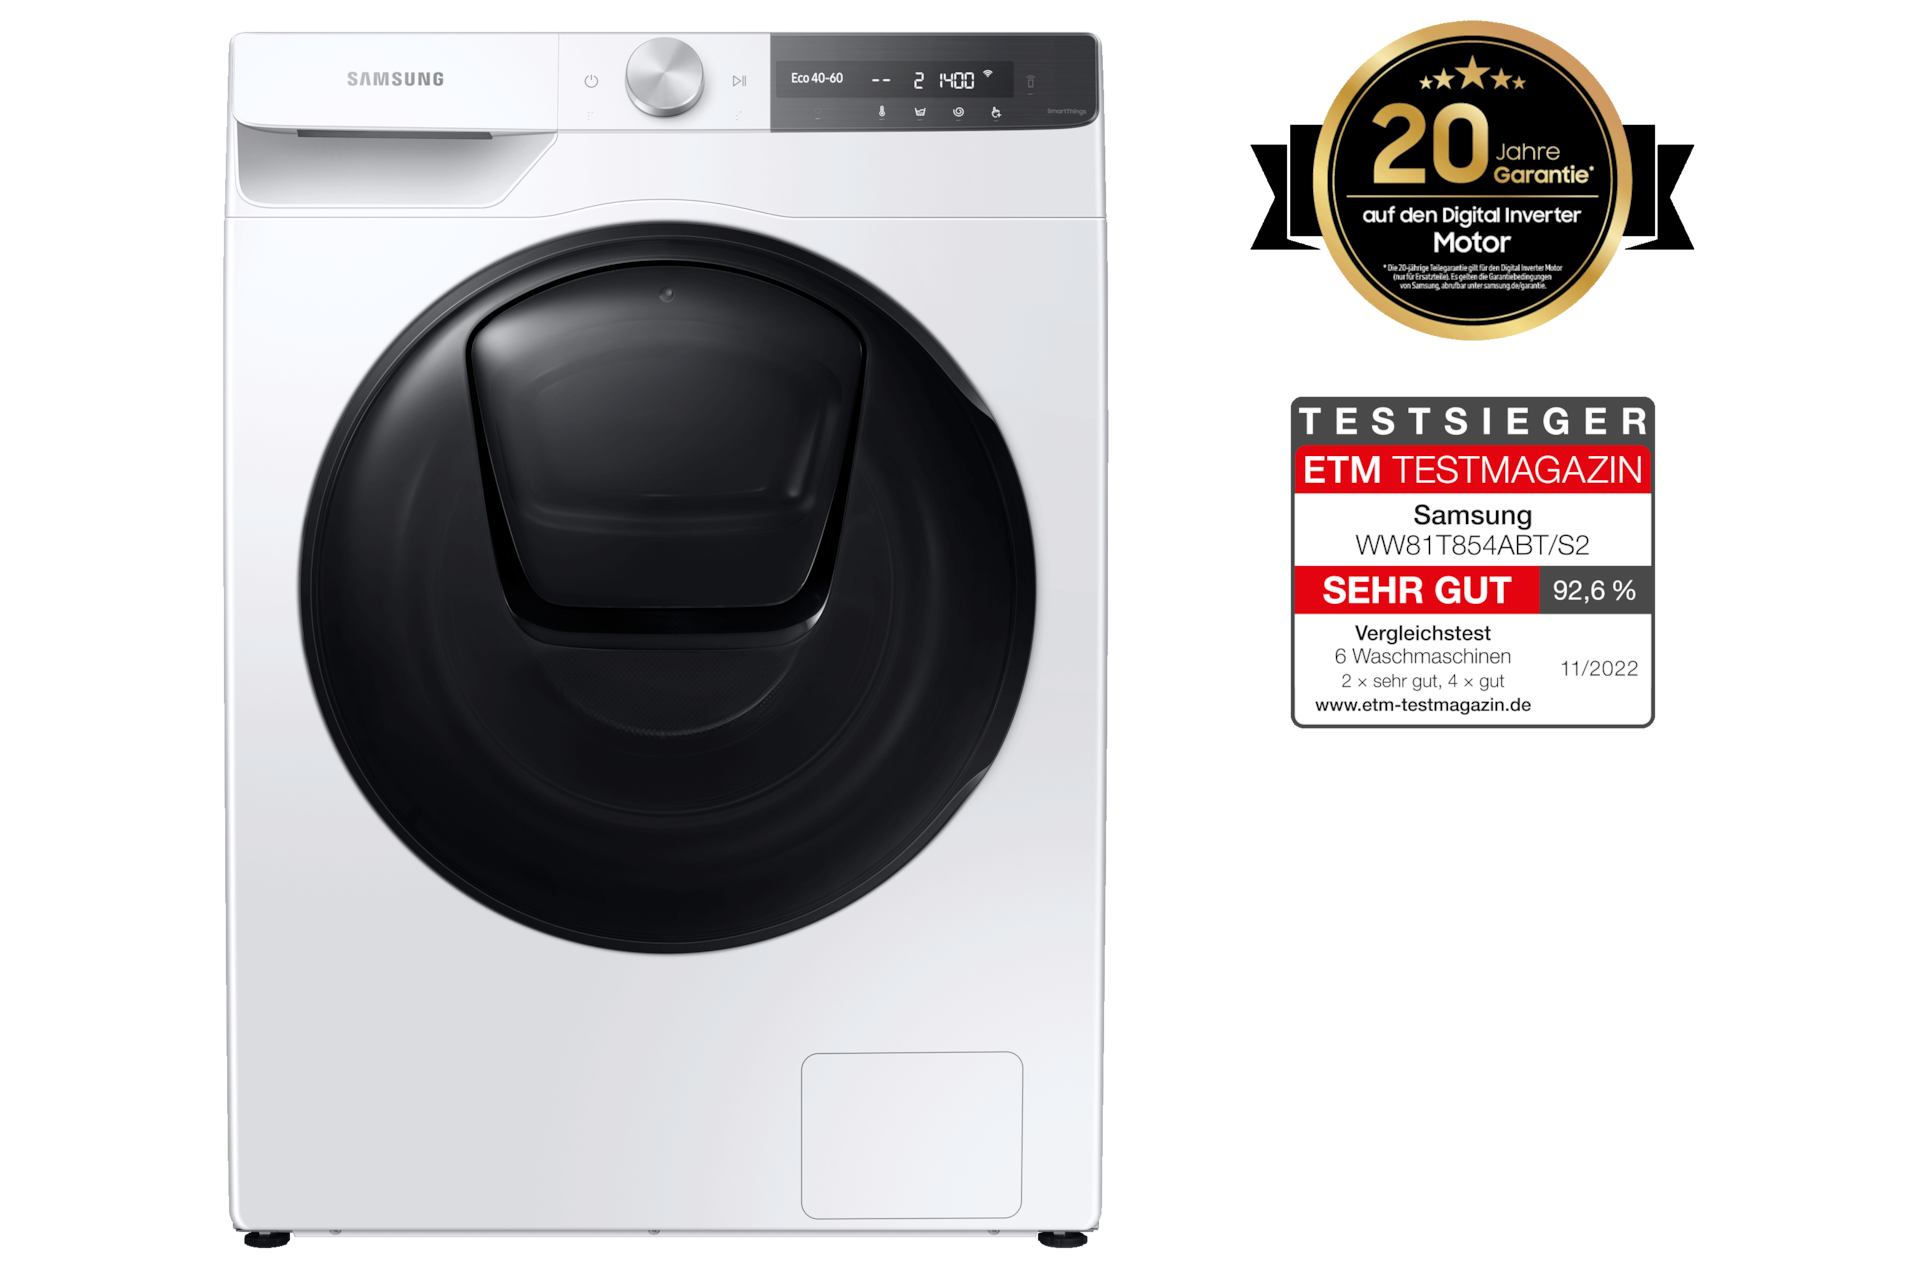 Waschmaschine AddWash™ 8 kg kaufen (WW81T854ABT/S2) | Samsung DE